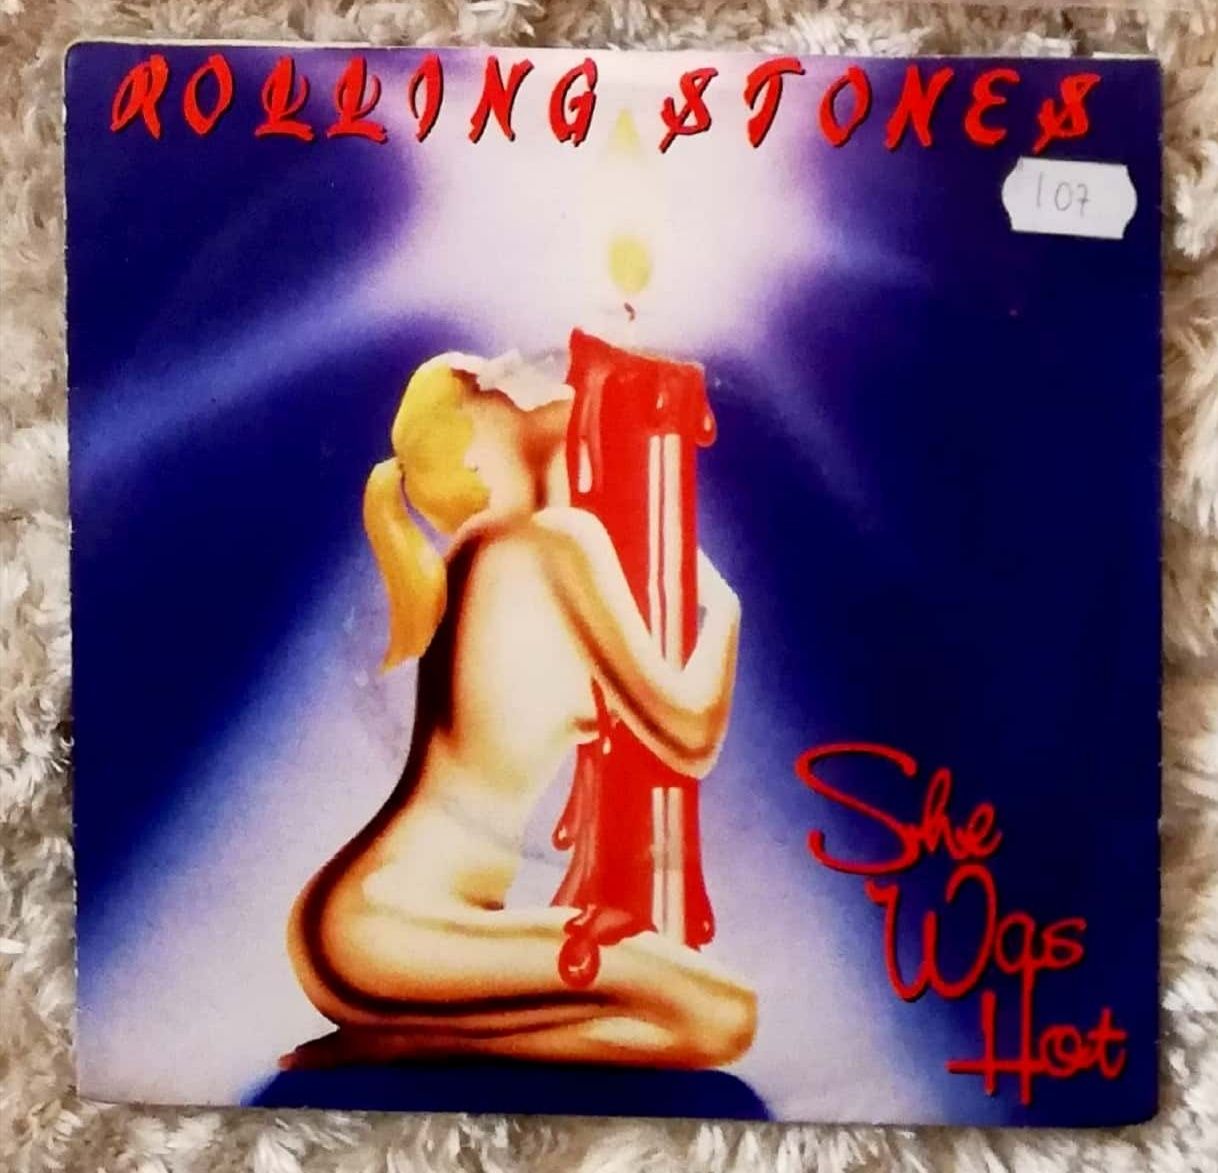 Rolling Stones (4 vinis e 1 CD)